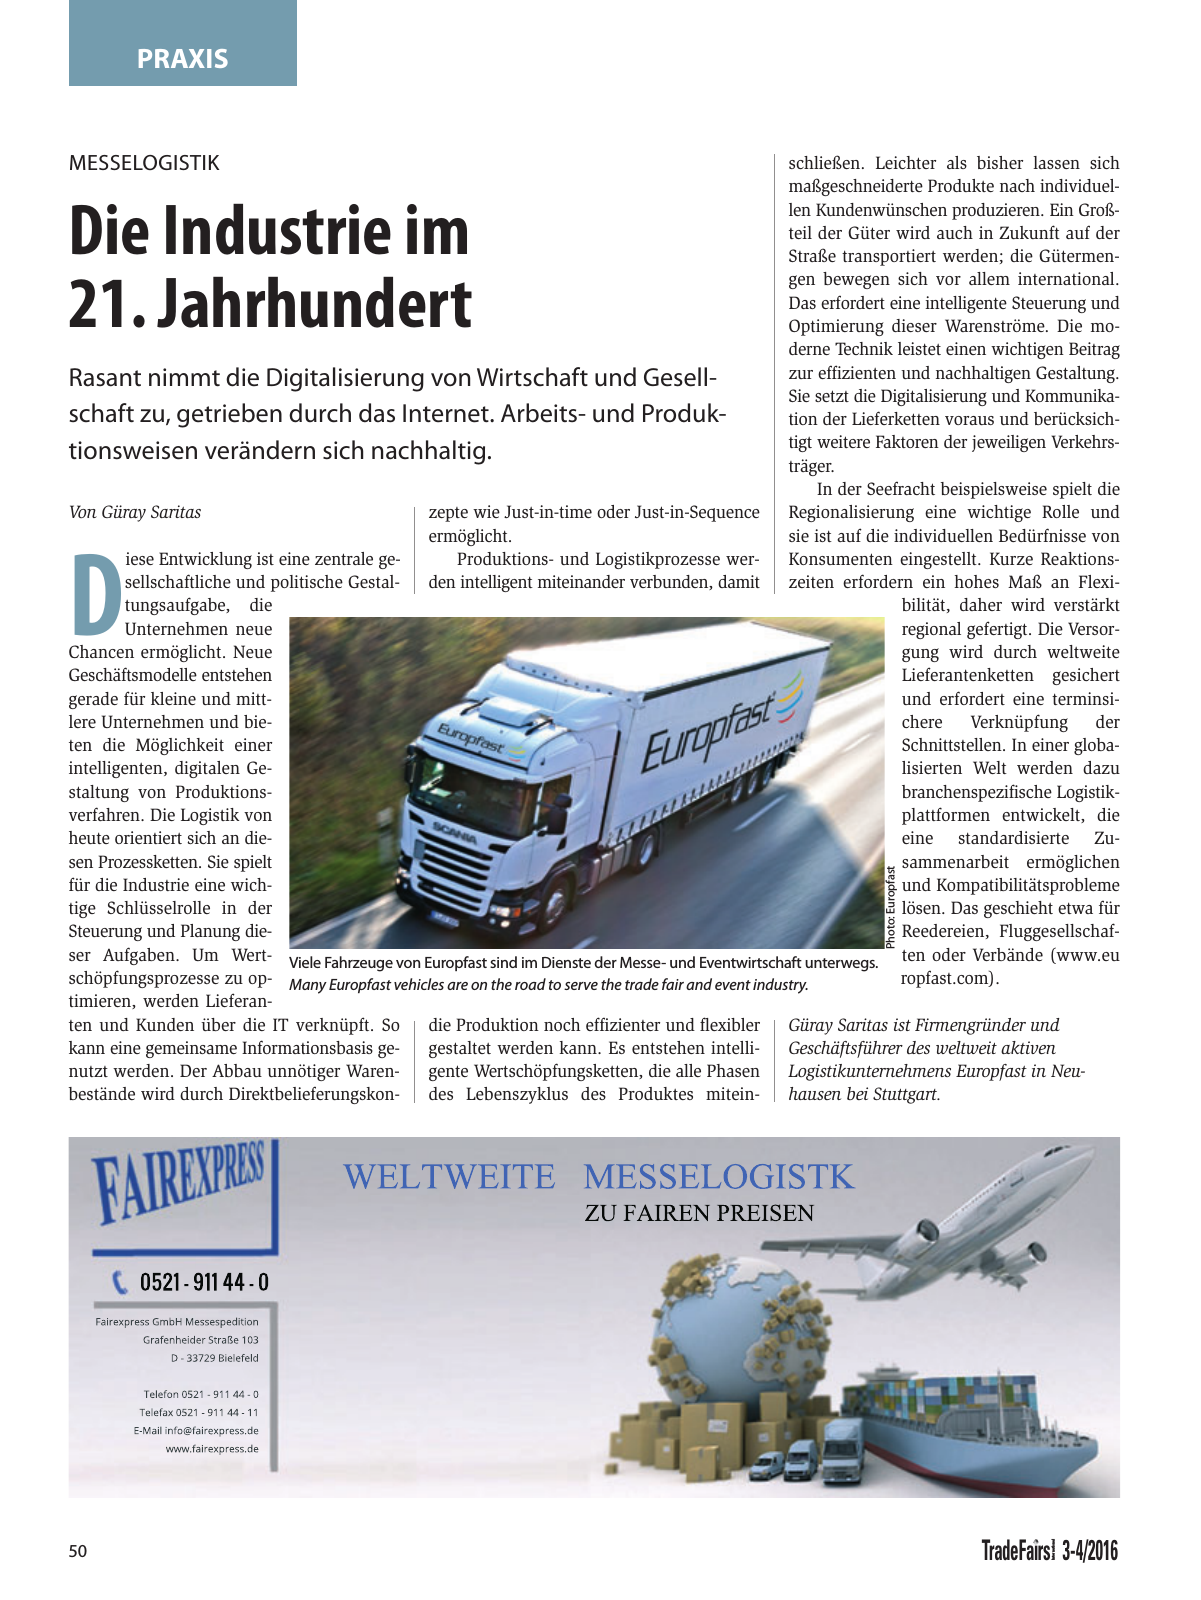 Vorschau TFI Trade-Fairs-International 03-04/2016 Seite 50